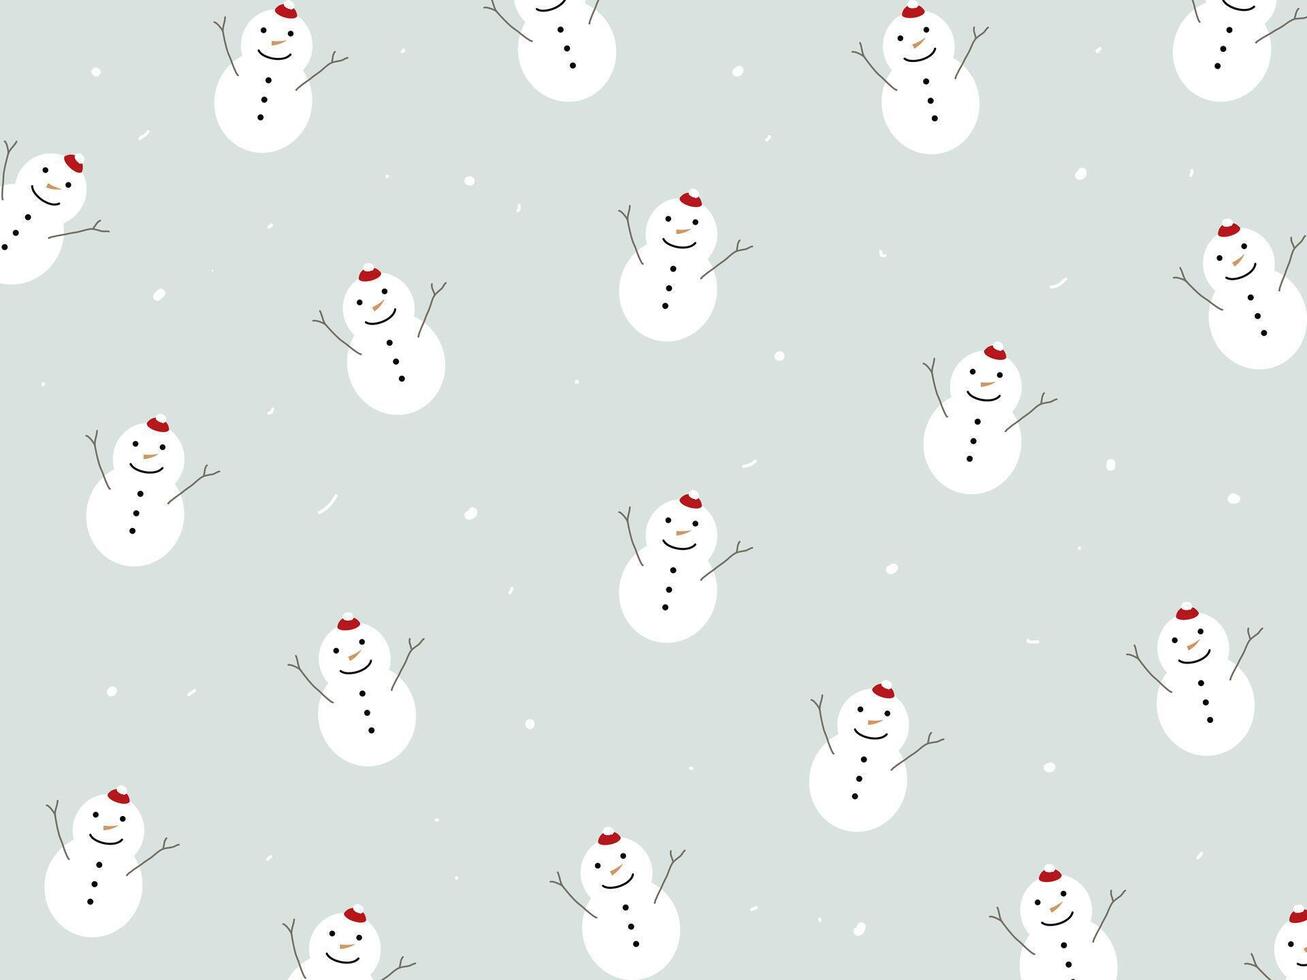 Schnee mans und Schnee Flocken Muster zum Winter Jahreszeit Konzept. Hand gezeichnet isoliert Illustrationen. vektor